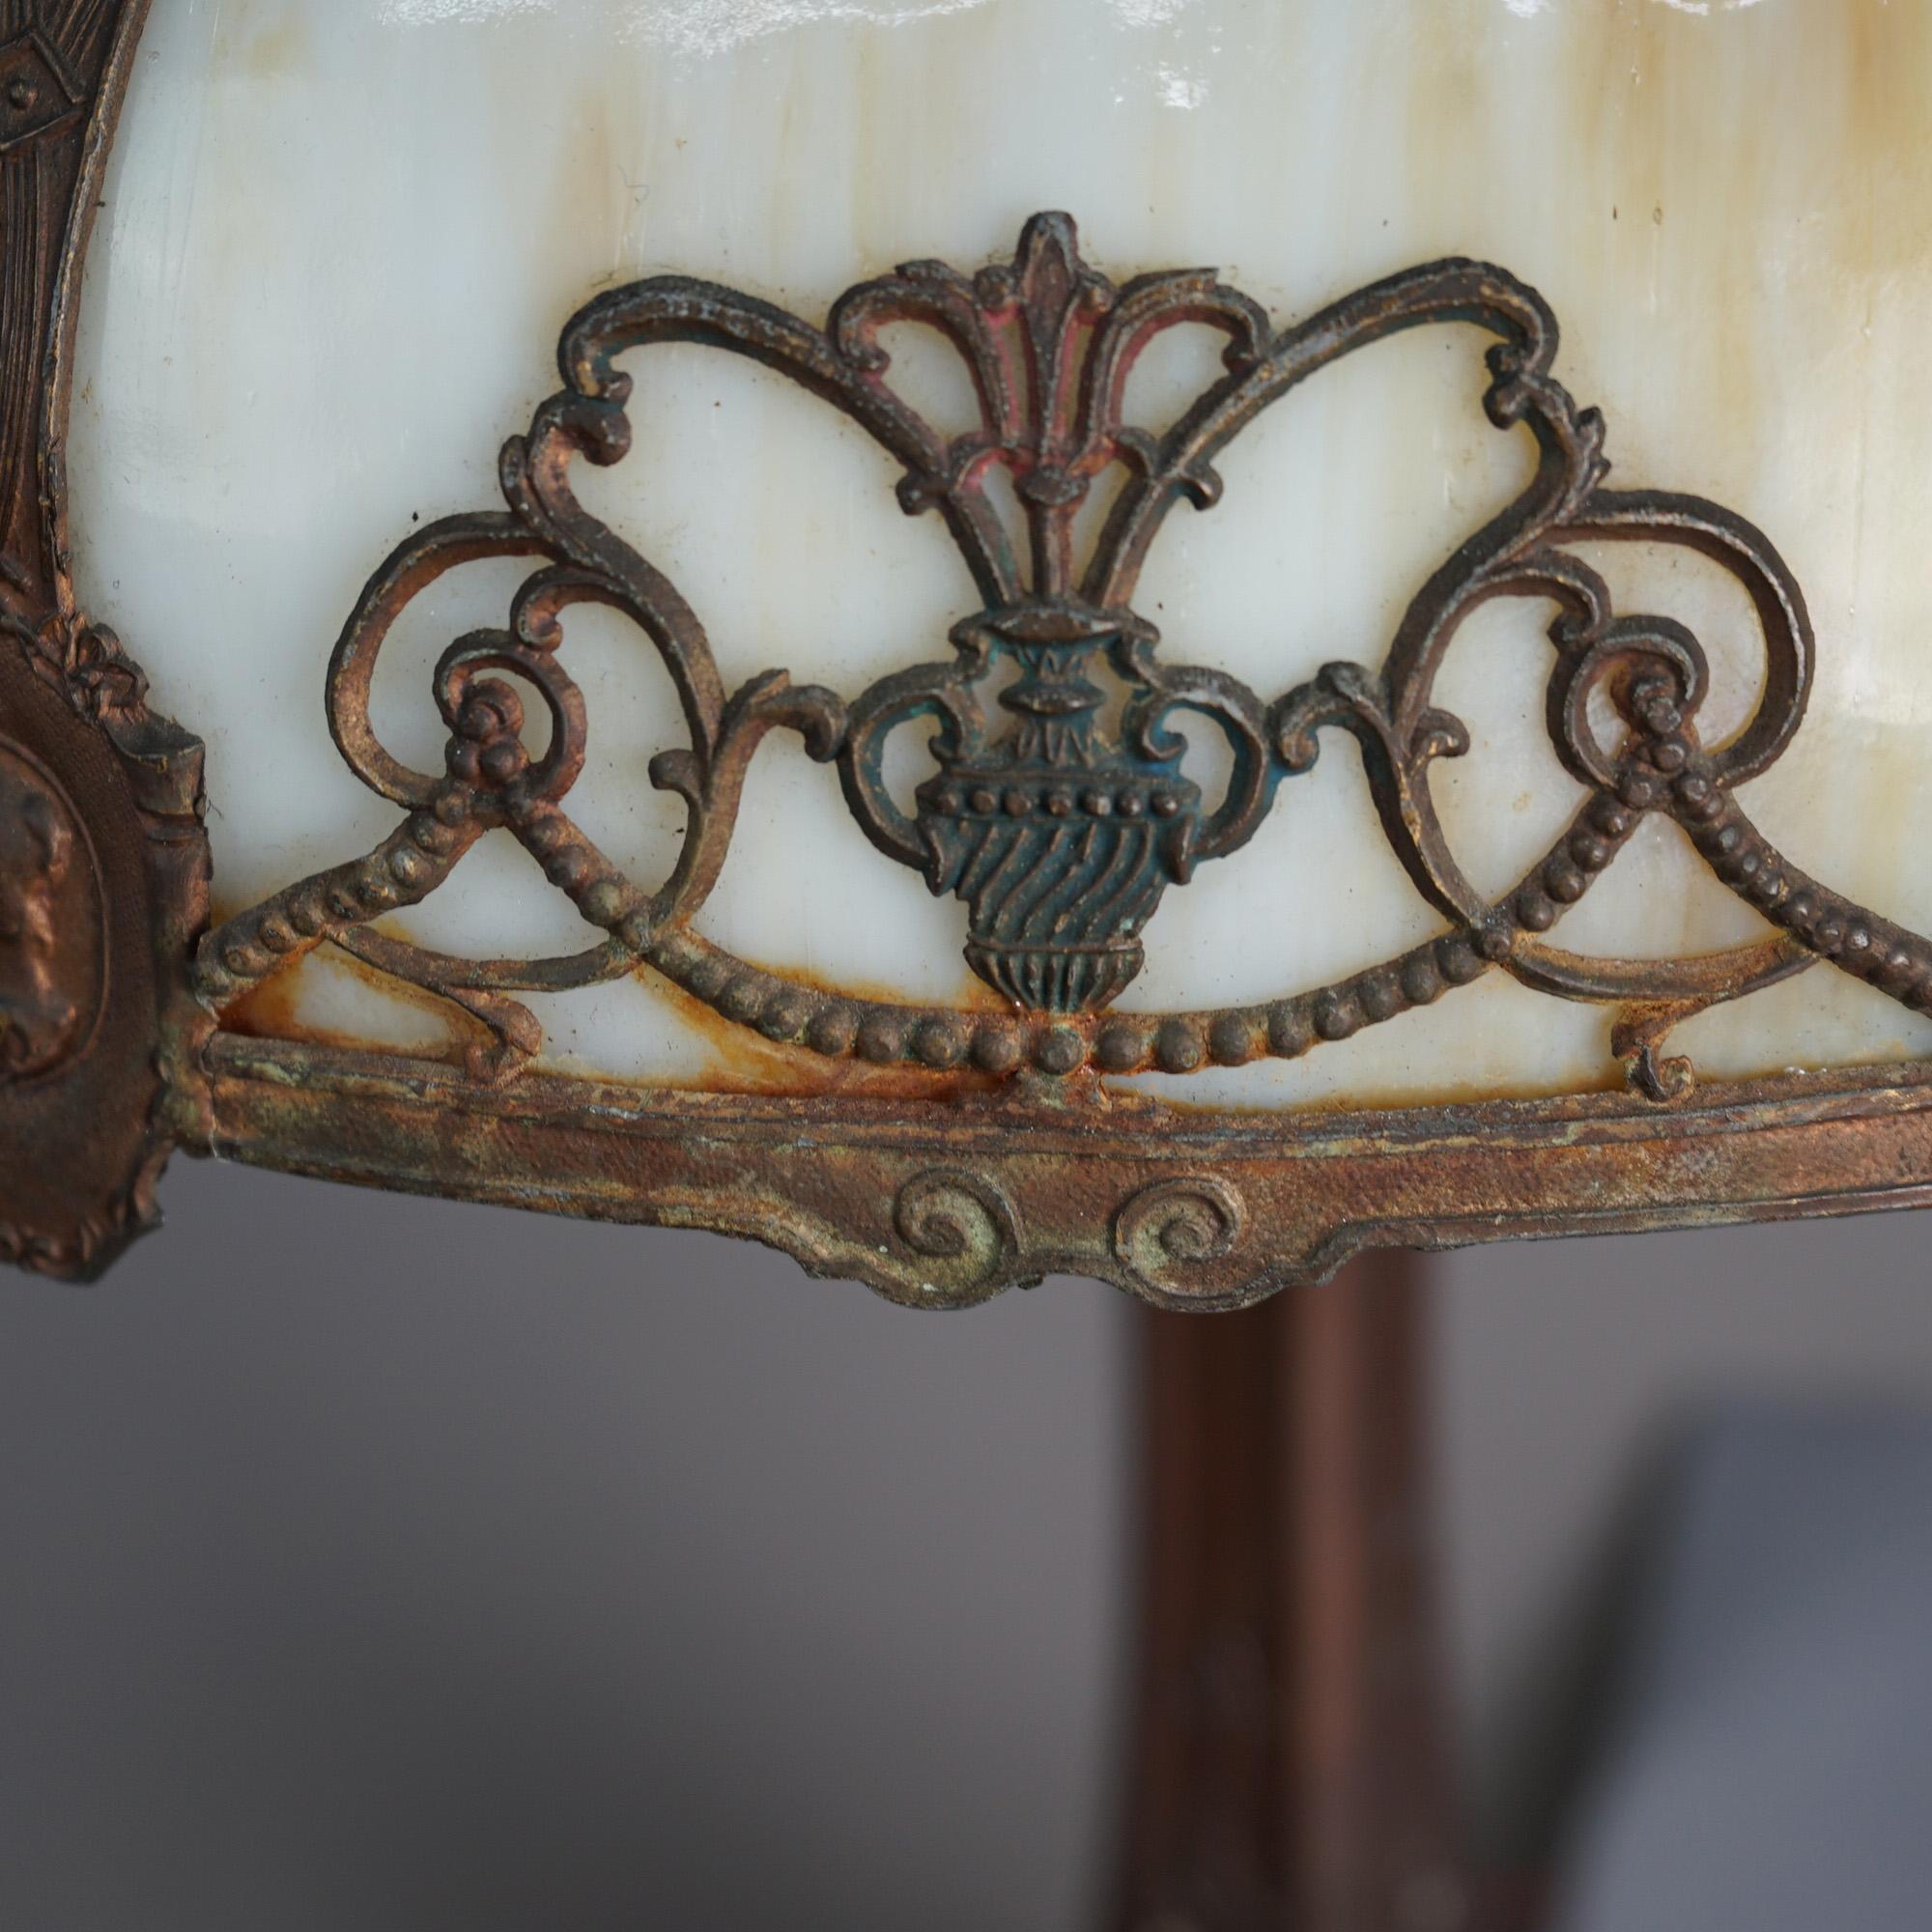 Lampe de table antique Arts & Crafts à la manière de Bradley & Hubbard, offrant un abat-jour en forme de dôme avec un cadre moulé comportant des éléments classiques filigranés et des médaillons de portrait en relief, abritant des panneaux en verre